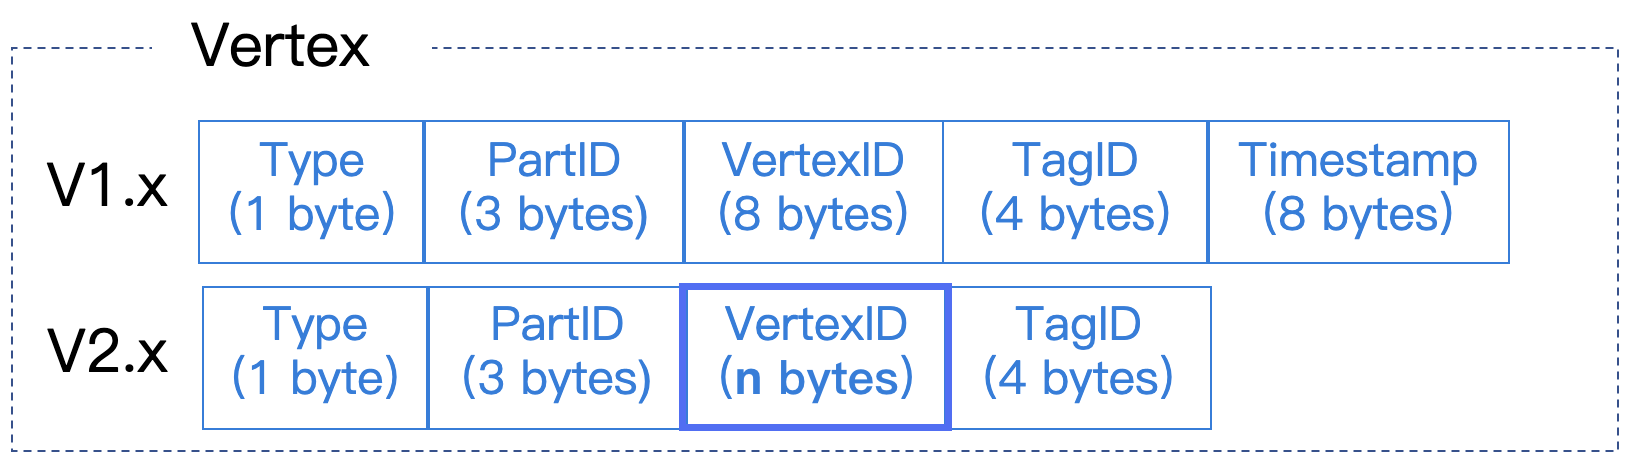 The vertex format of storage service